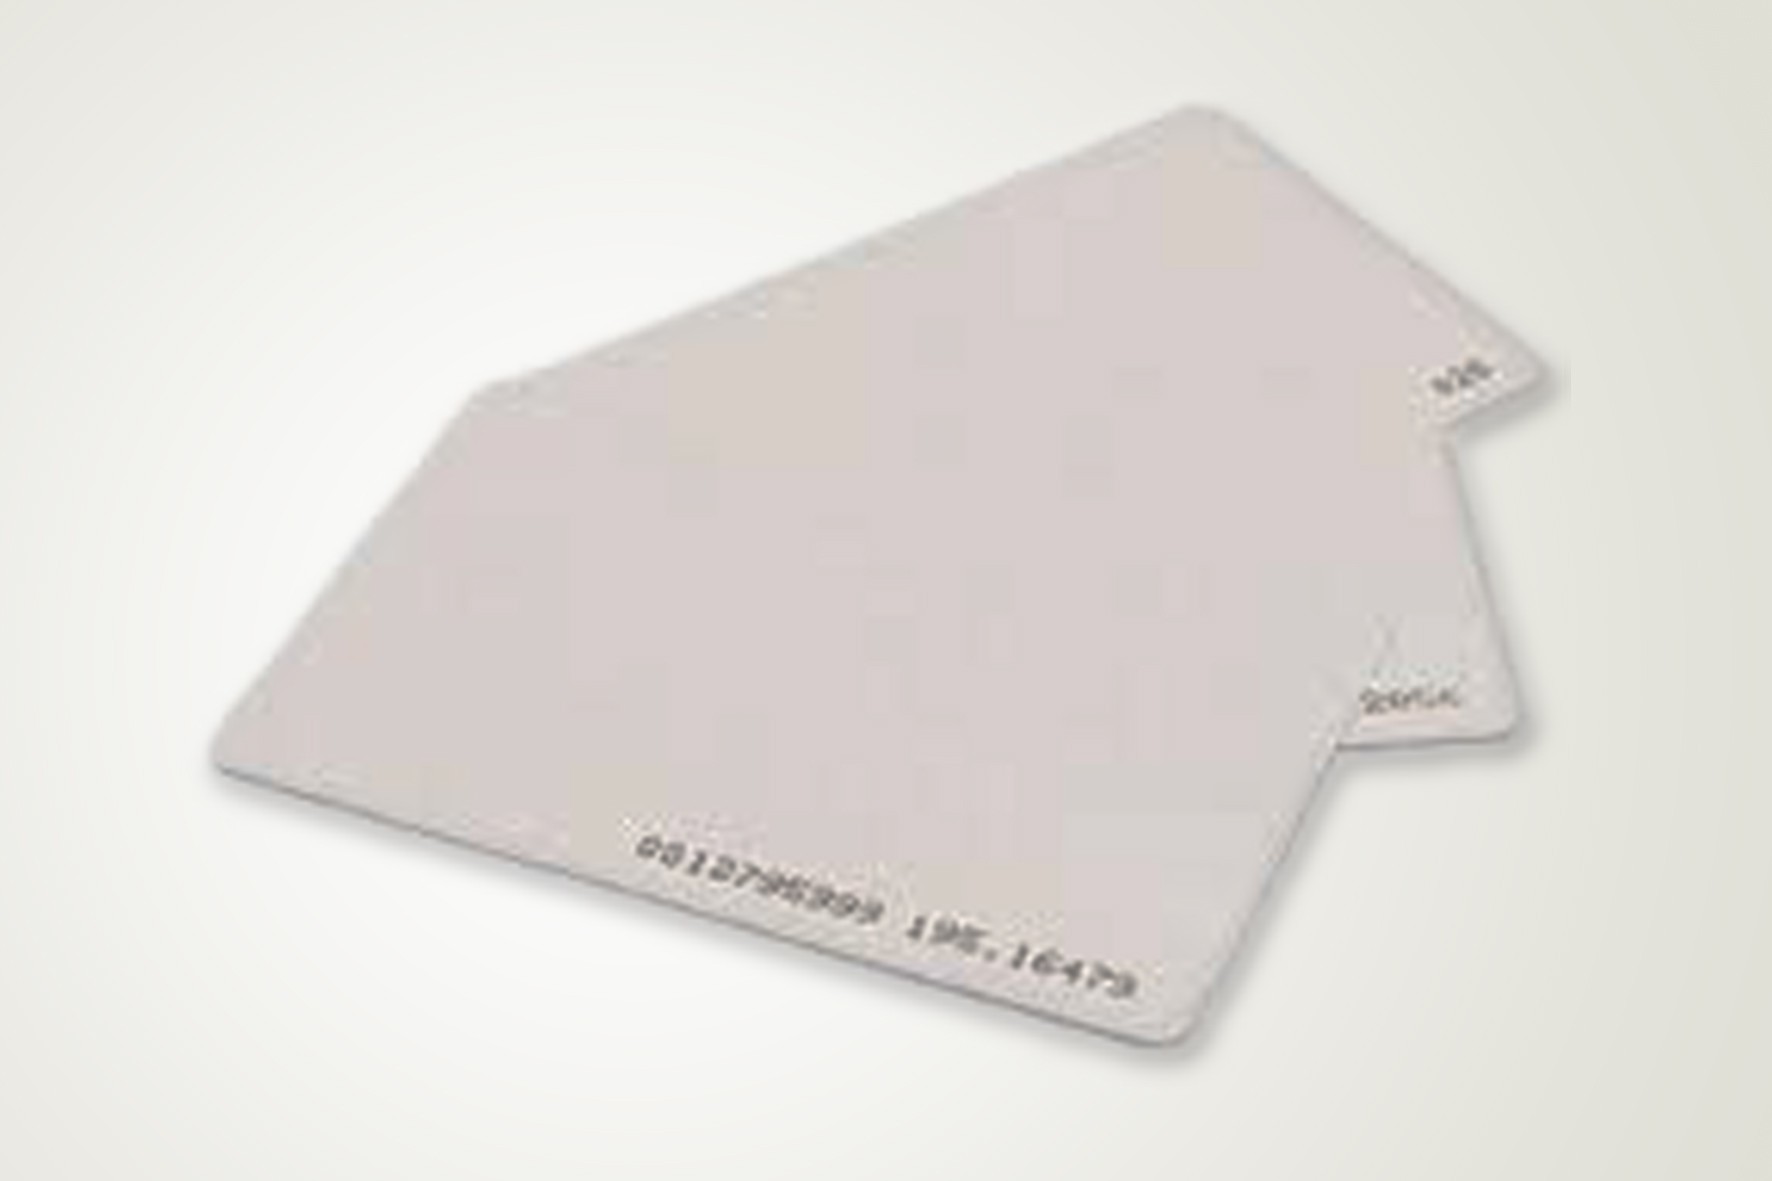 Cartão com Chip de Aproximidade na Vila Miriam - Confecção de Cartões SP